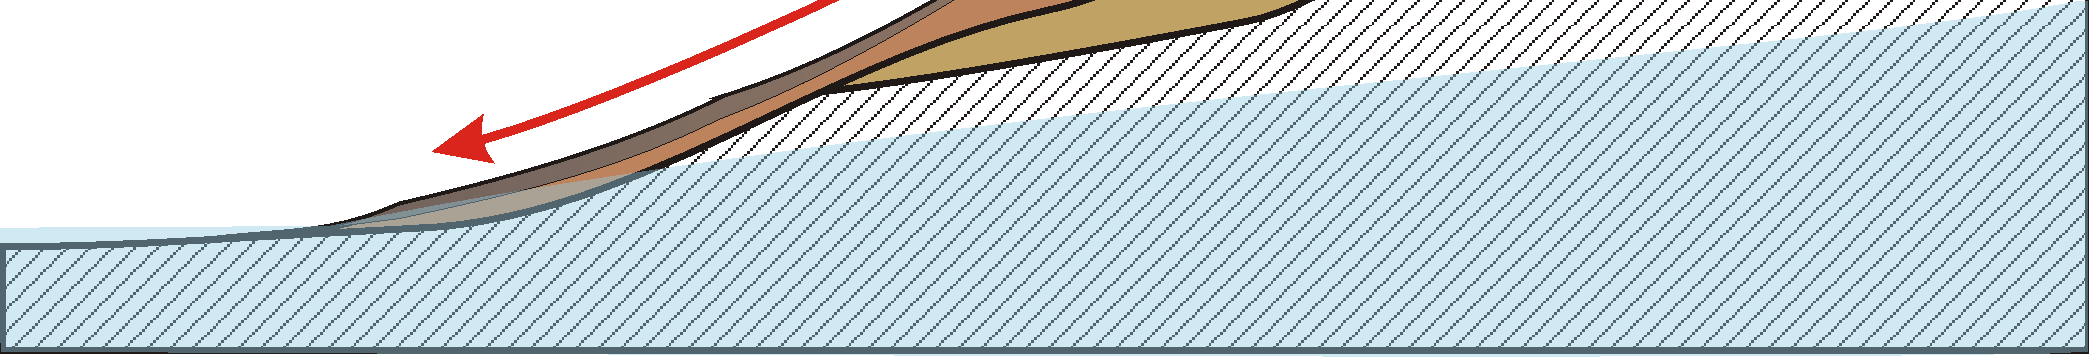 Chuva Esc oam ento superfic ial: deslocamento de partículas Erosão